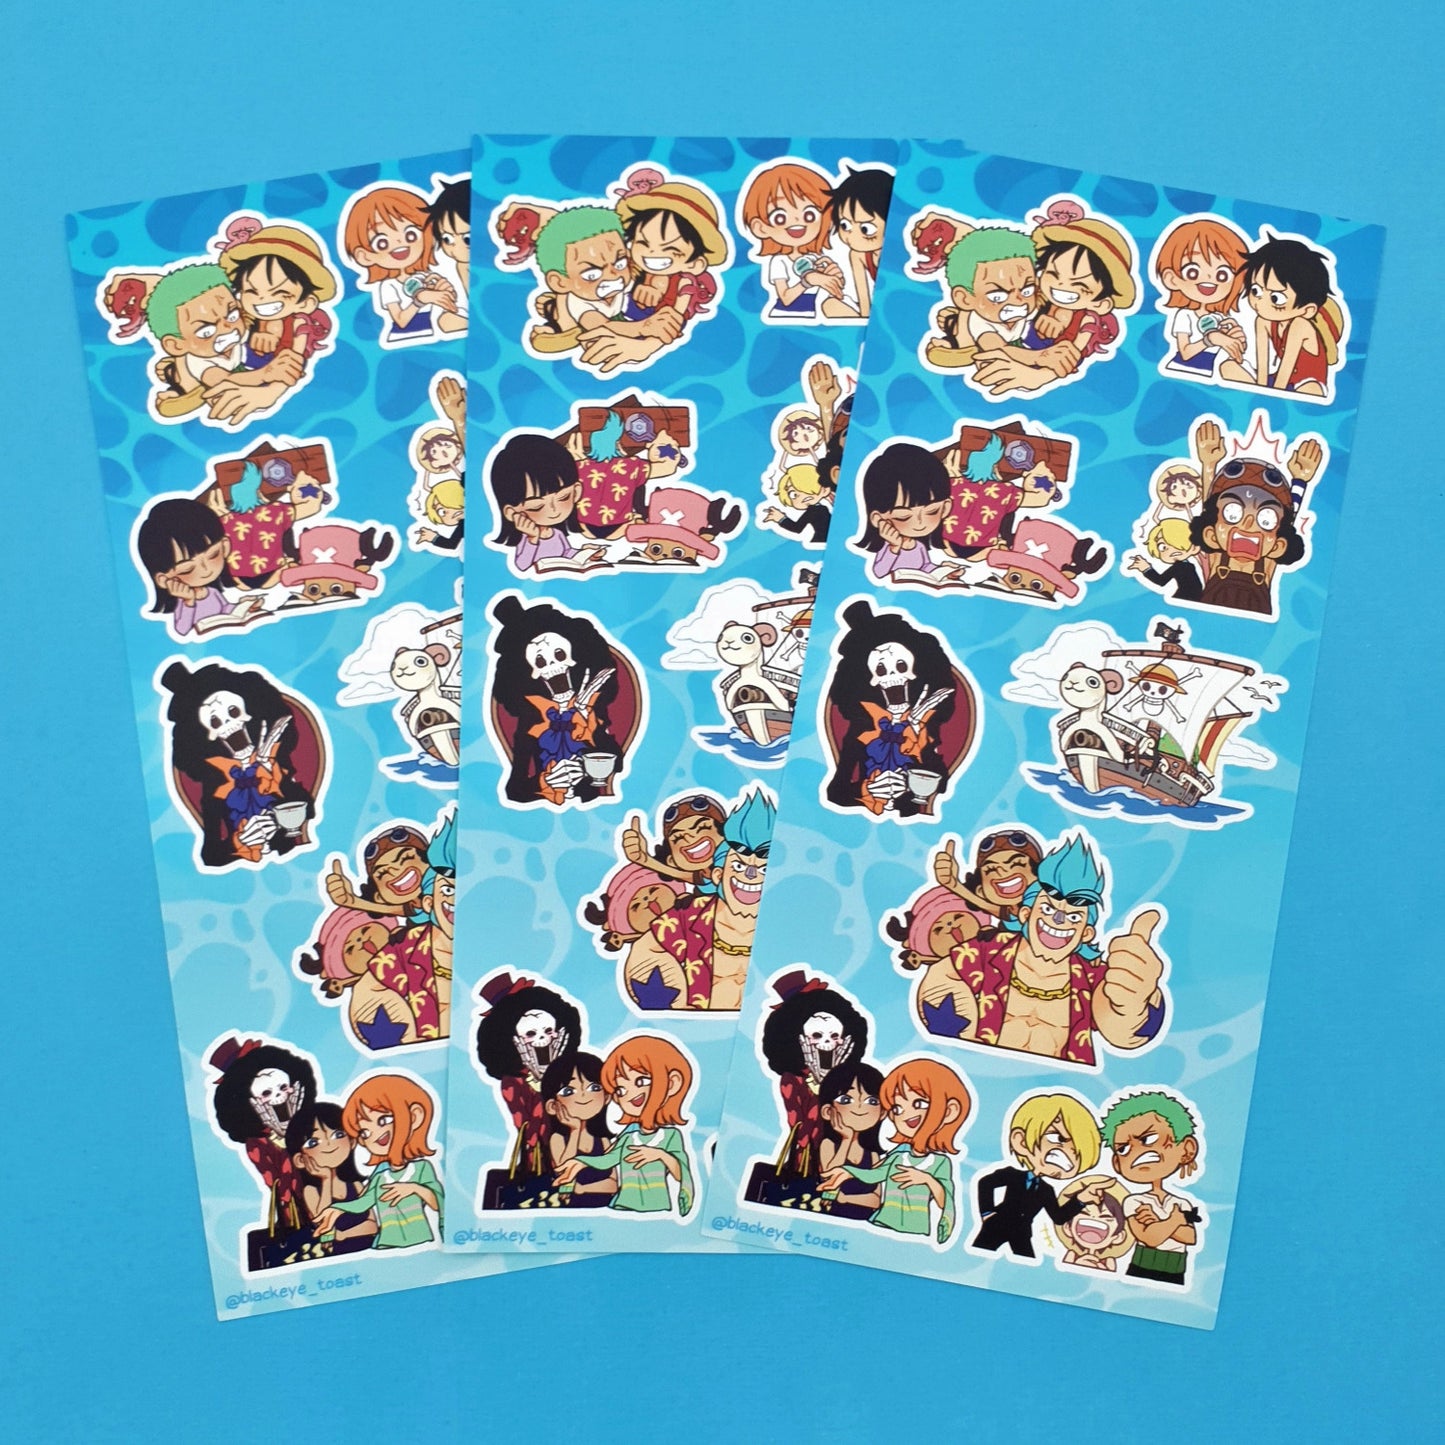 One Piece Stickers